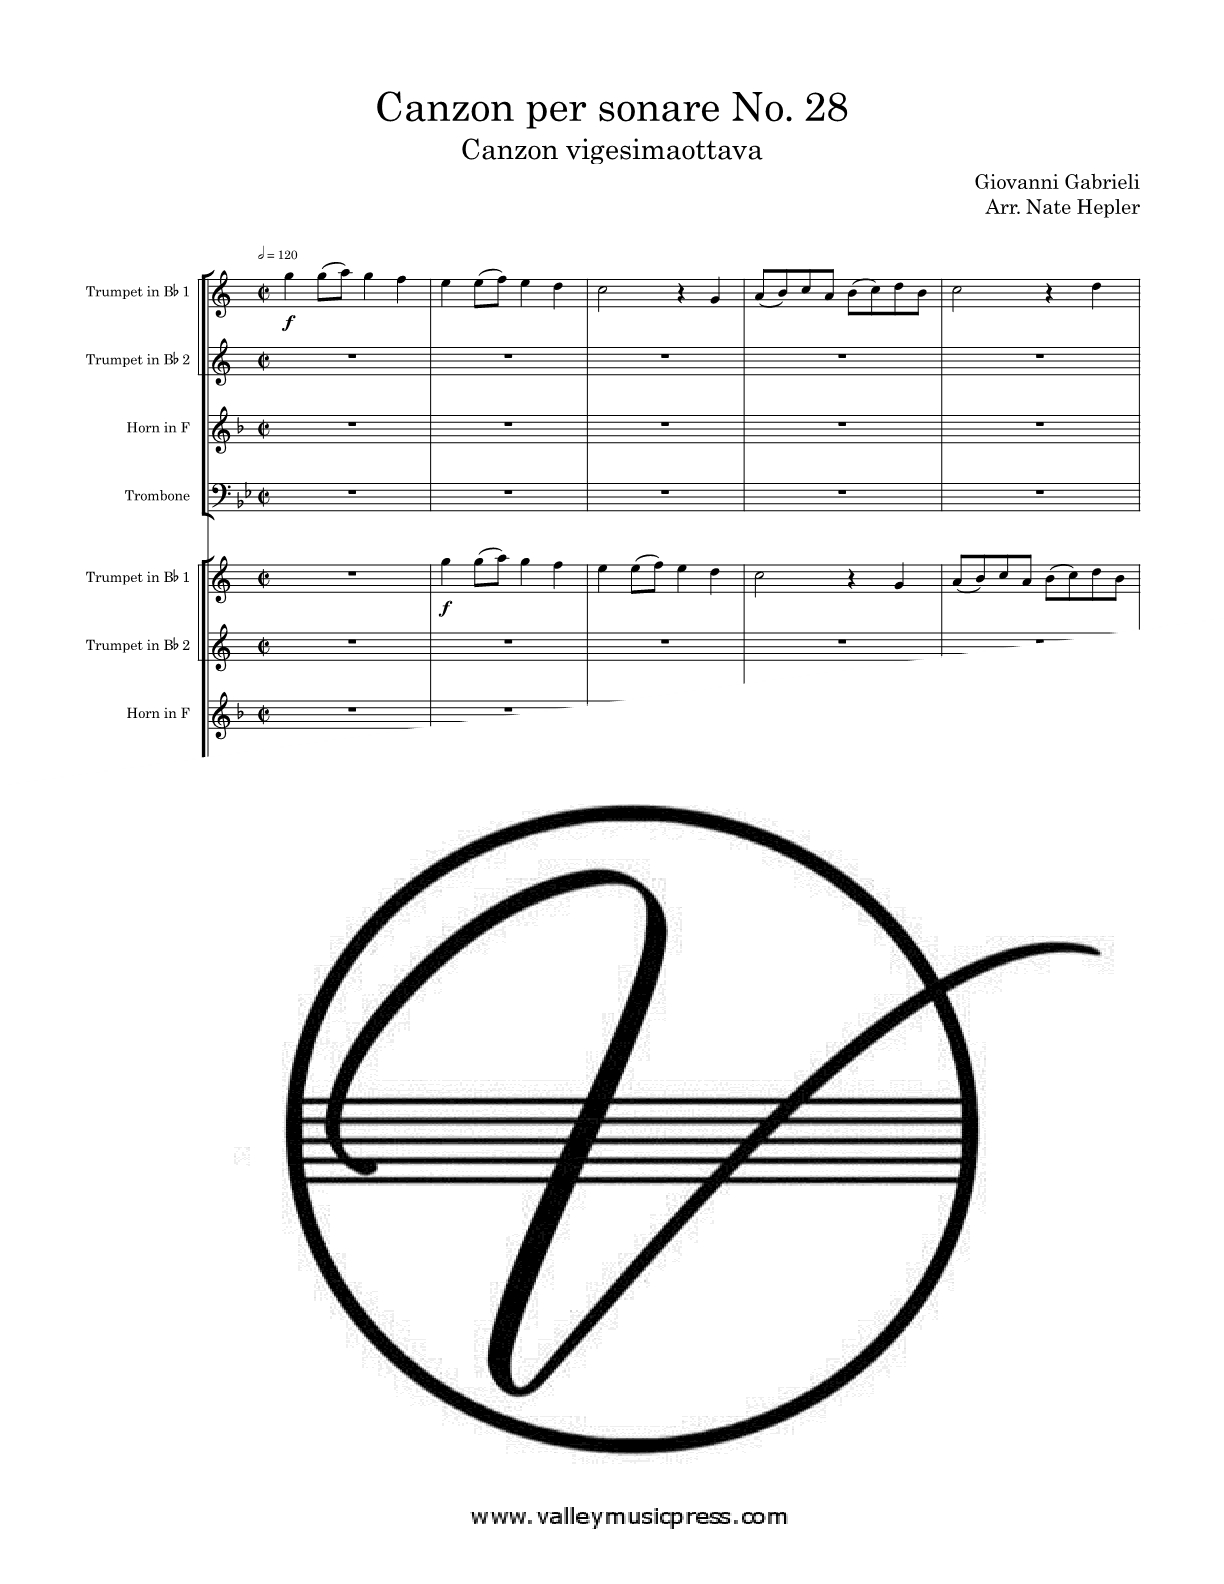 Gabrieli - Canzon per sonare No. 28 Vigesimaottava (Brass Octet) - Click Image to Close